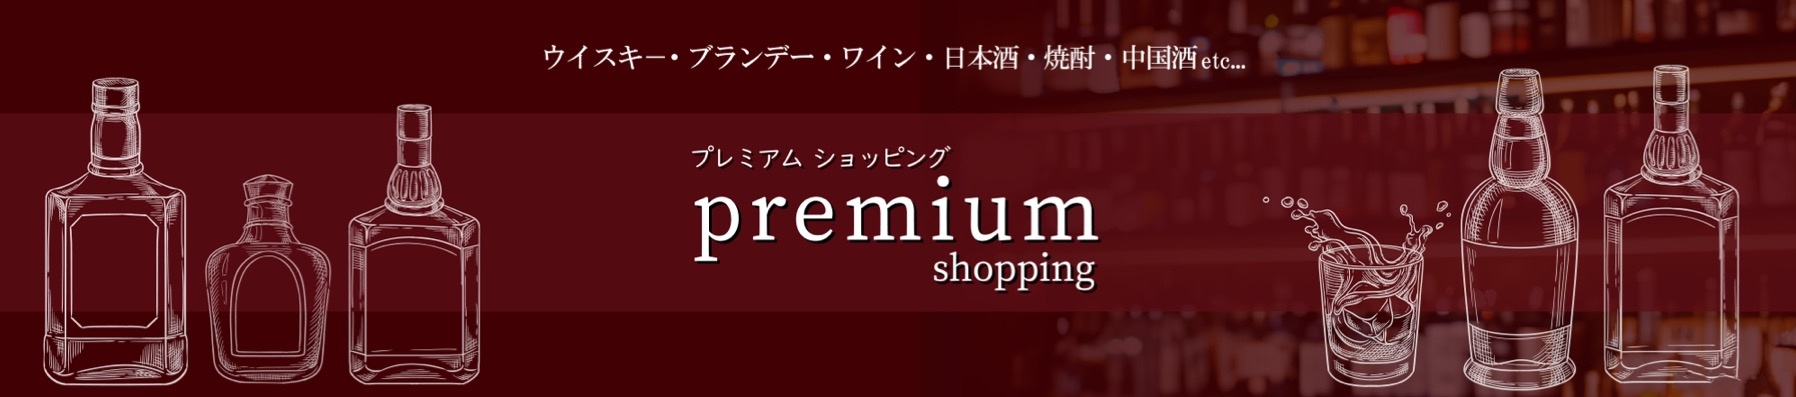 premium-shopping ヘッダー画像